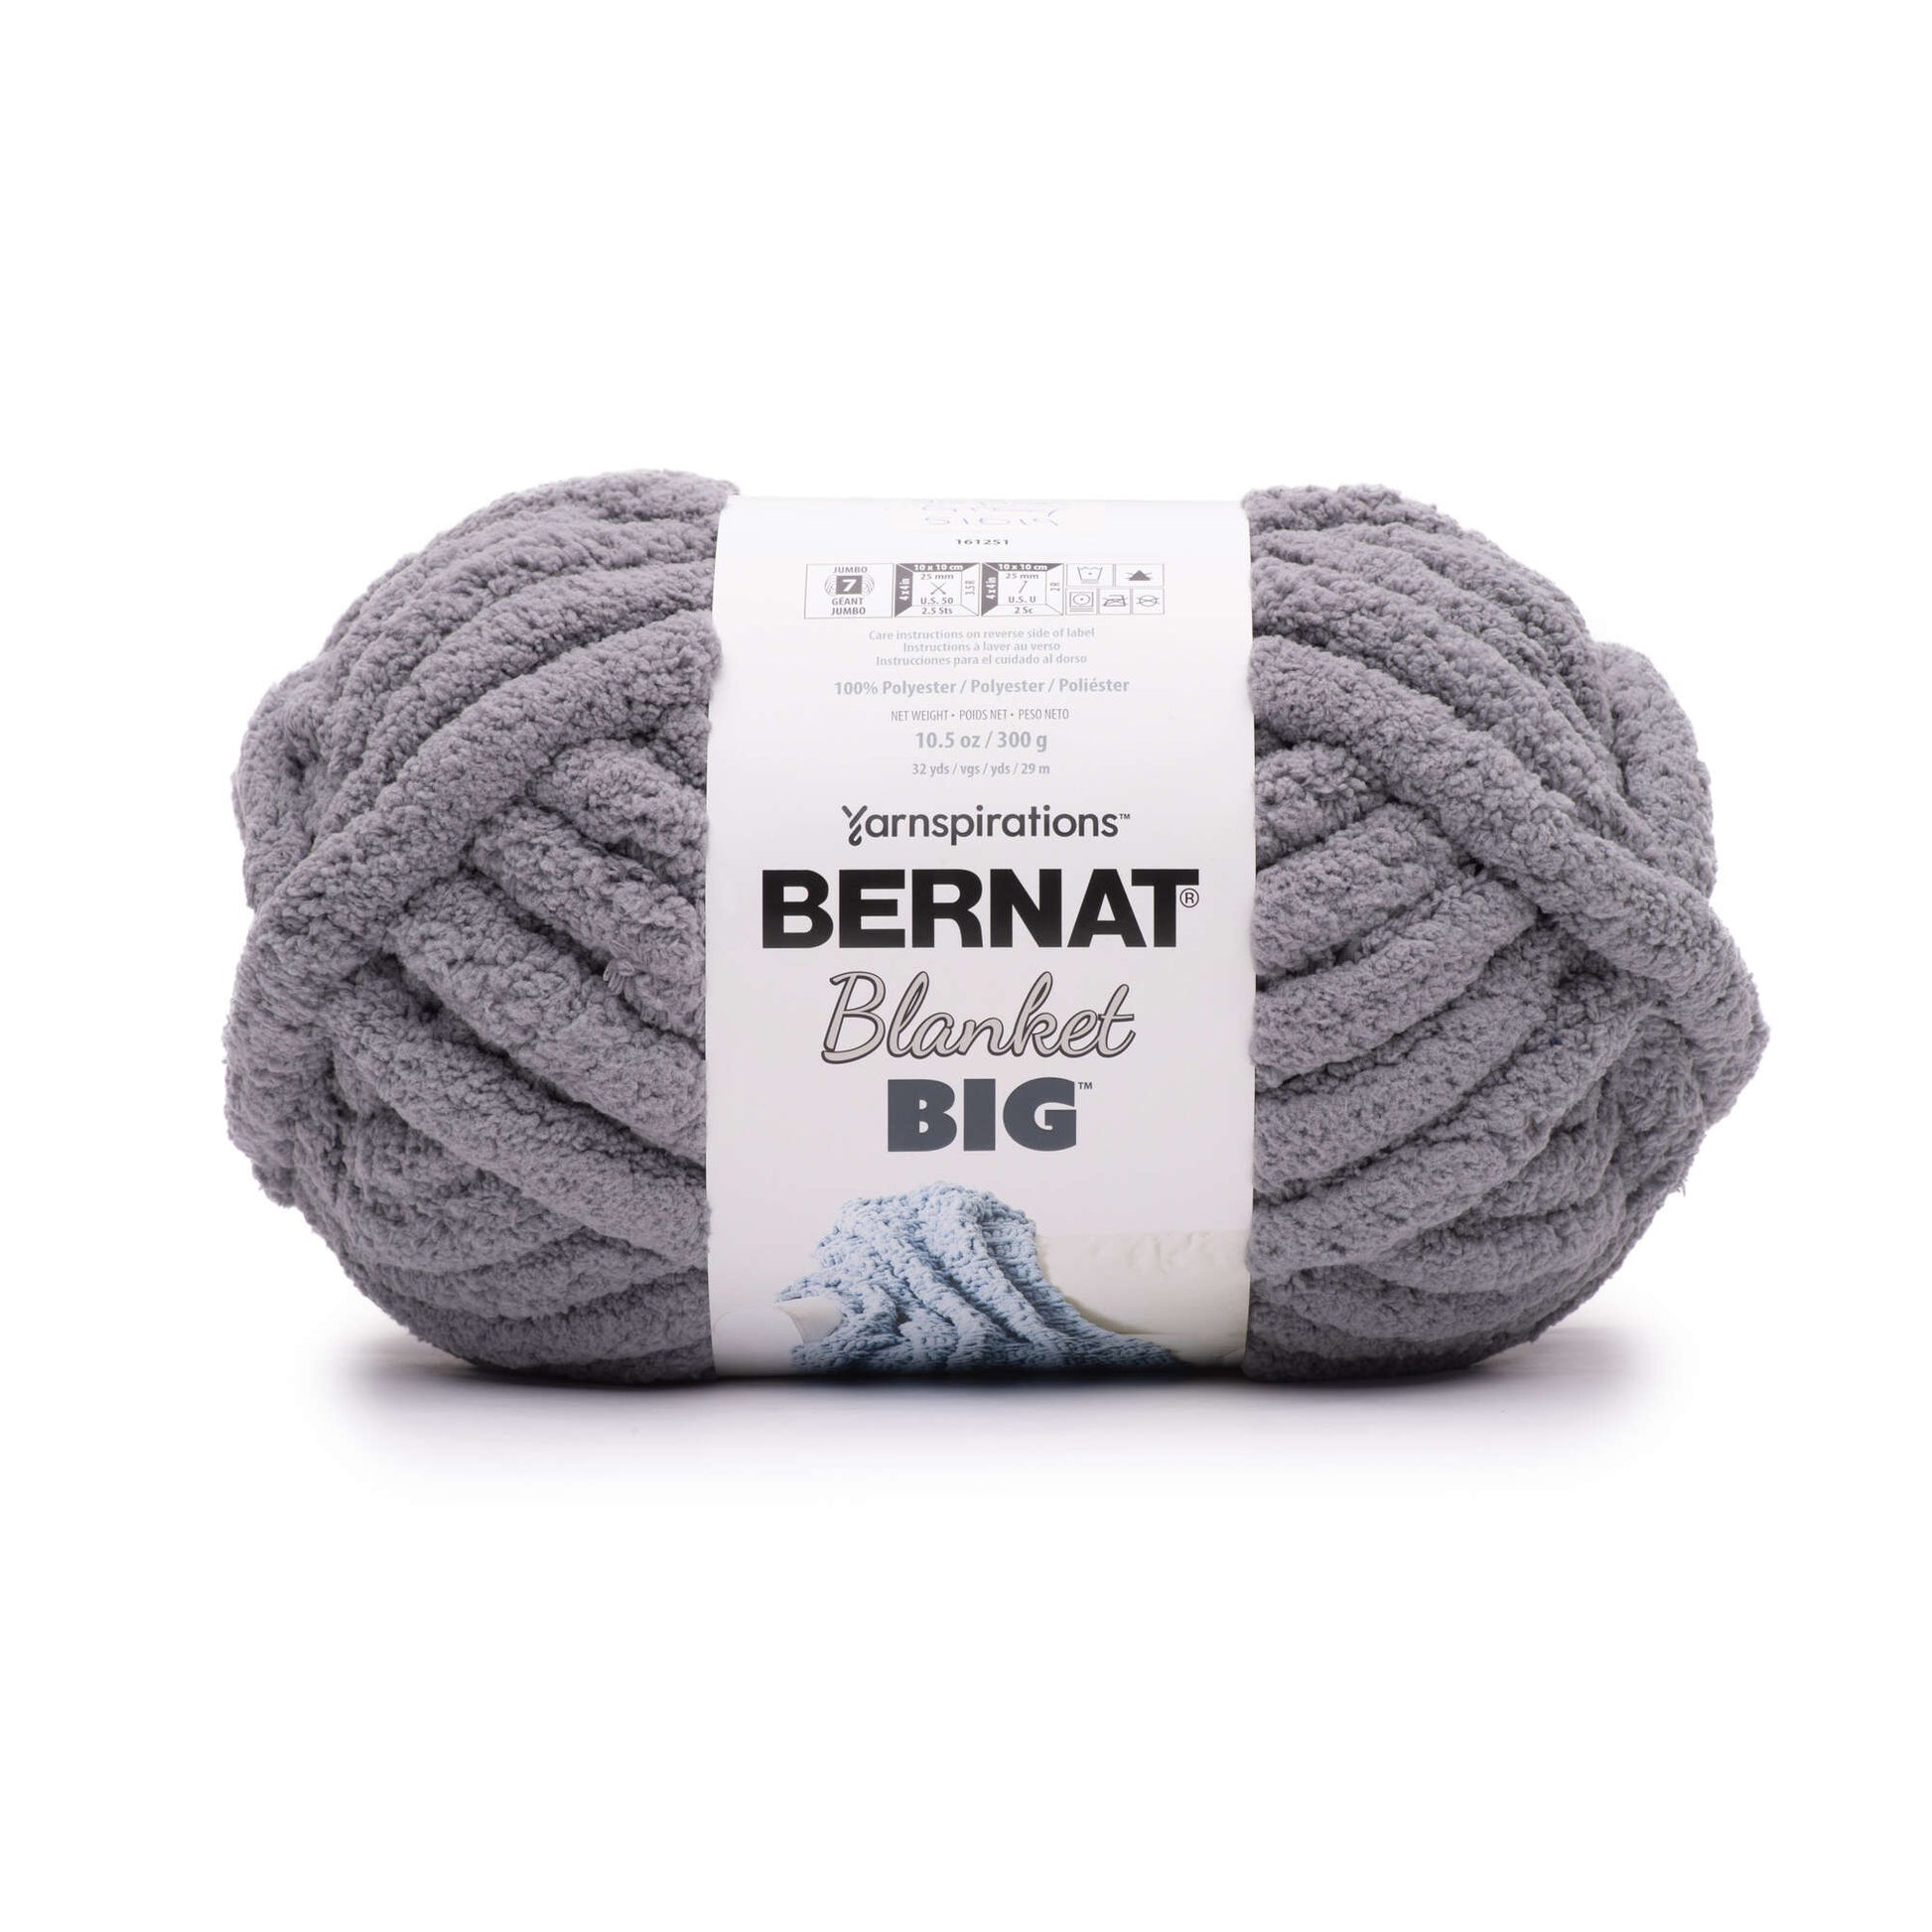 Bernat Blanket Big Yarn (300g/10.5oz) Vapor Gray